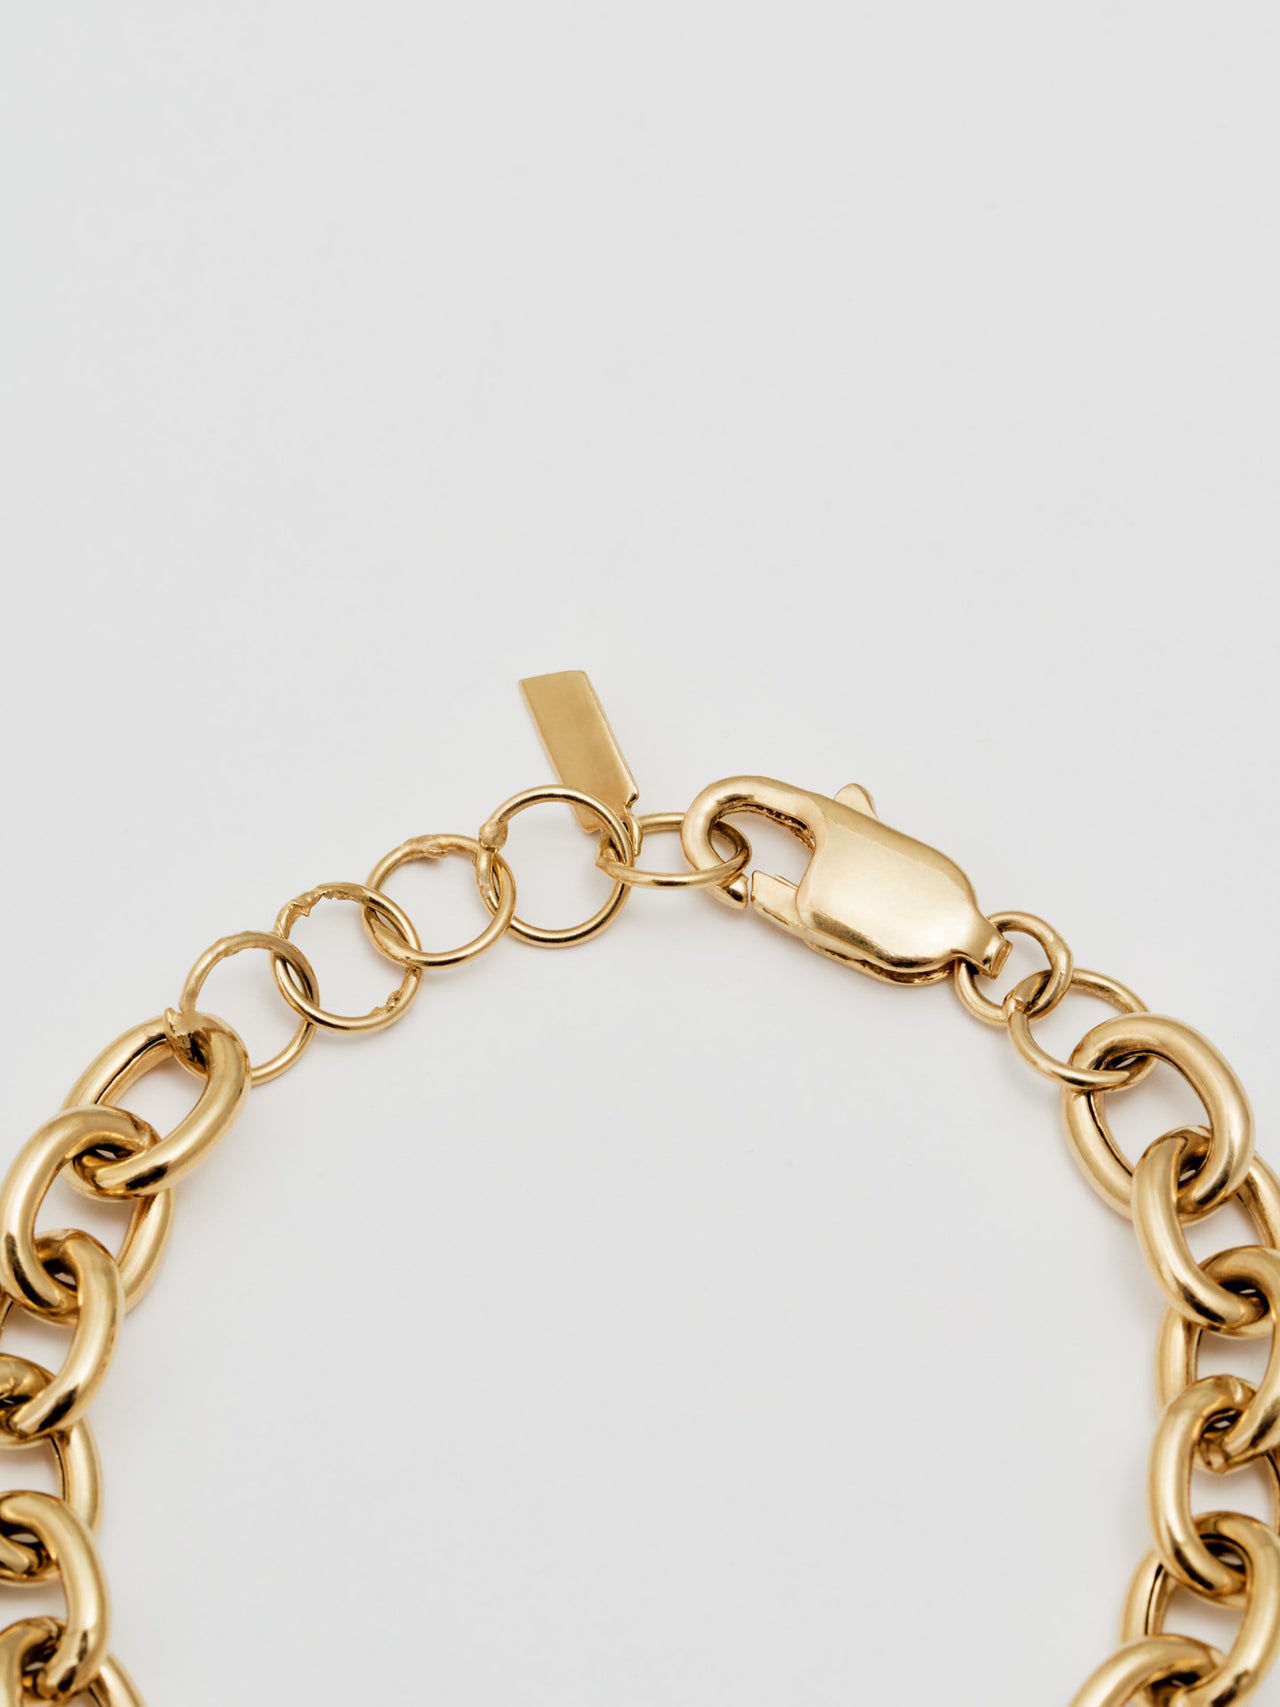 XXL Round Link Chain Bracelet